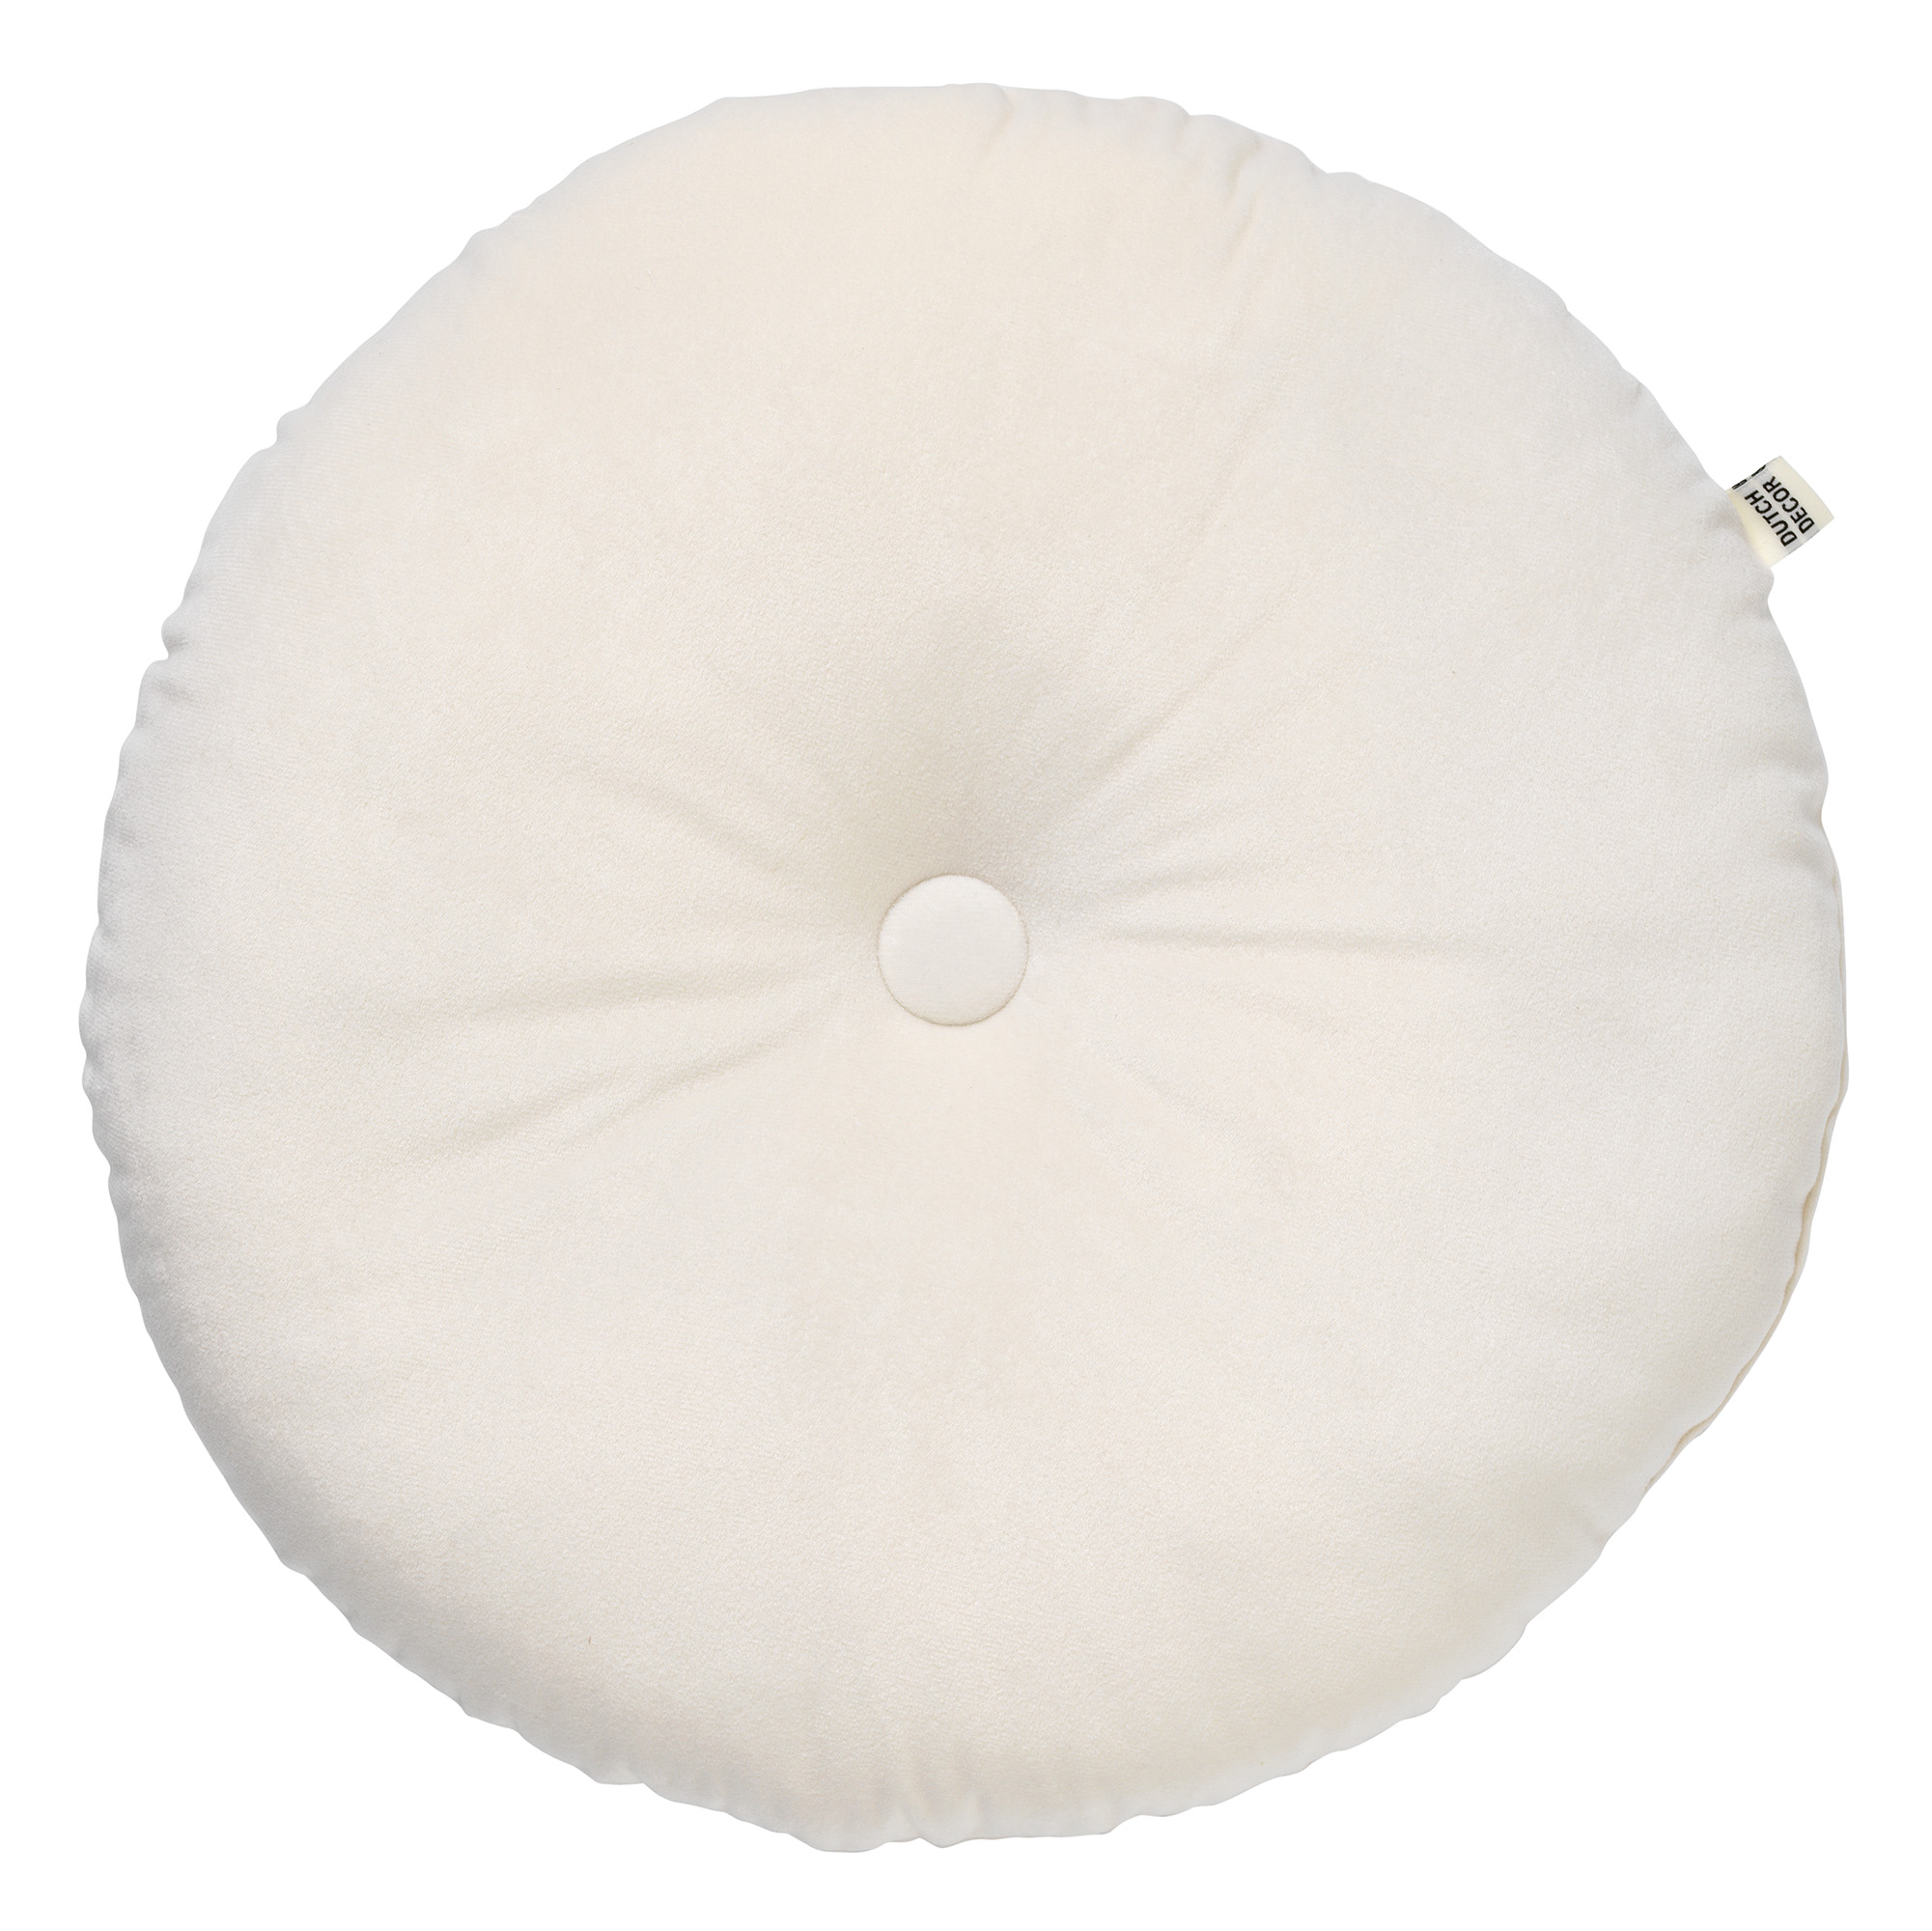 OLLY - Cushion 40 cm Snow White - off-white